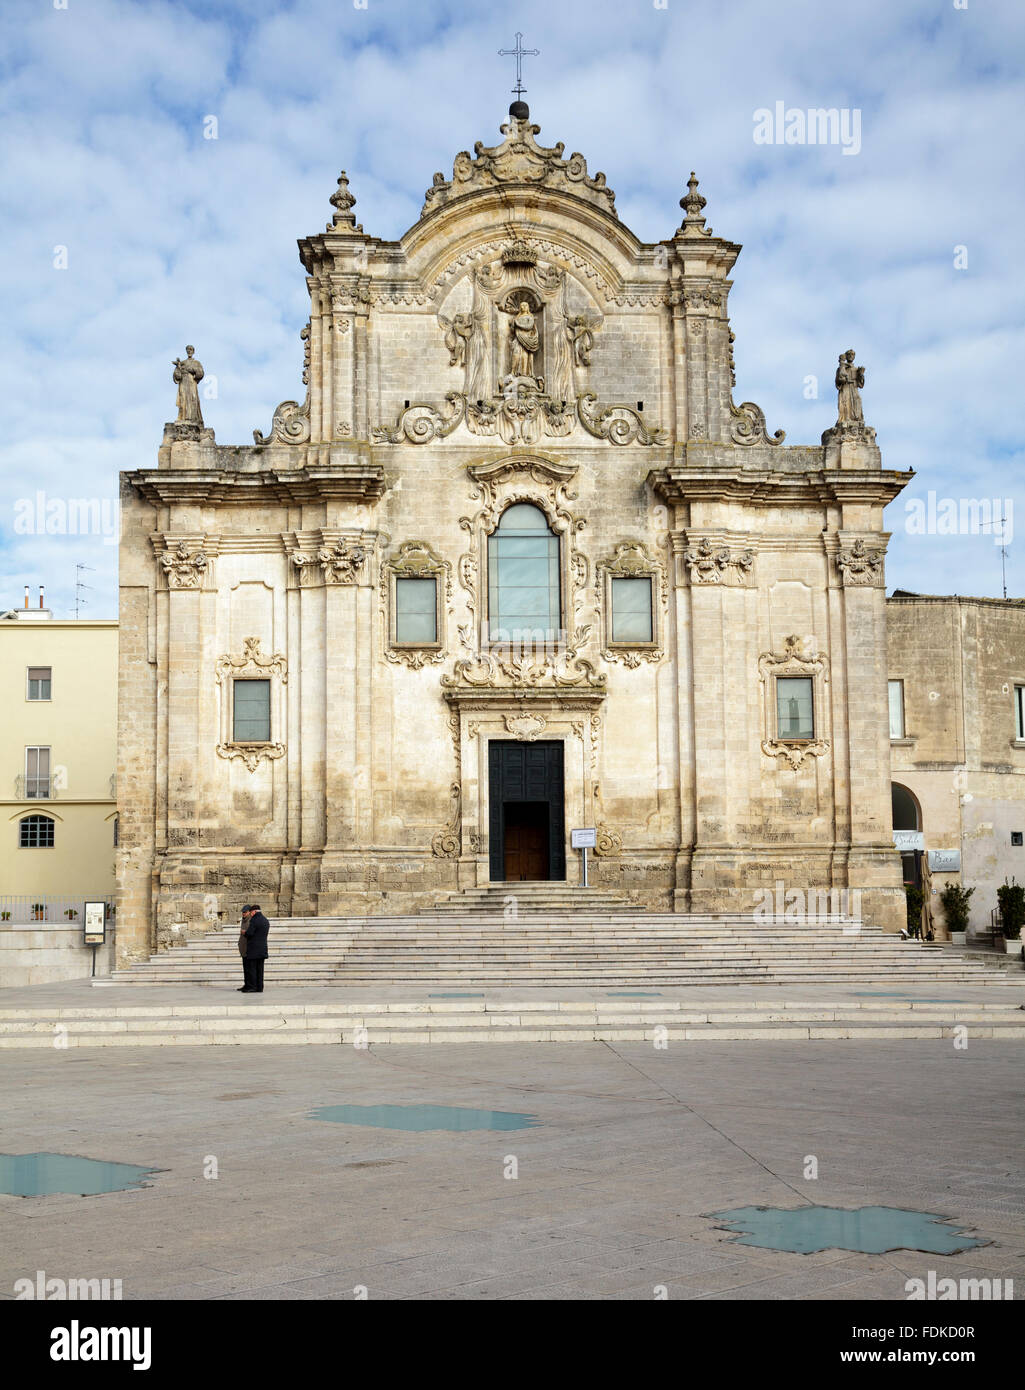 Eglise de Saint François d'Assise, Matera, Basilicate, Italie Banque D'Images